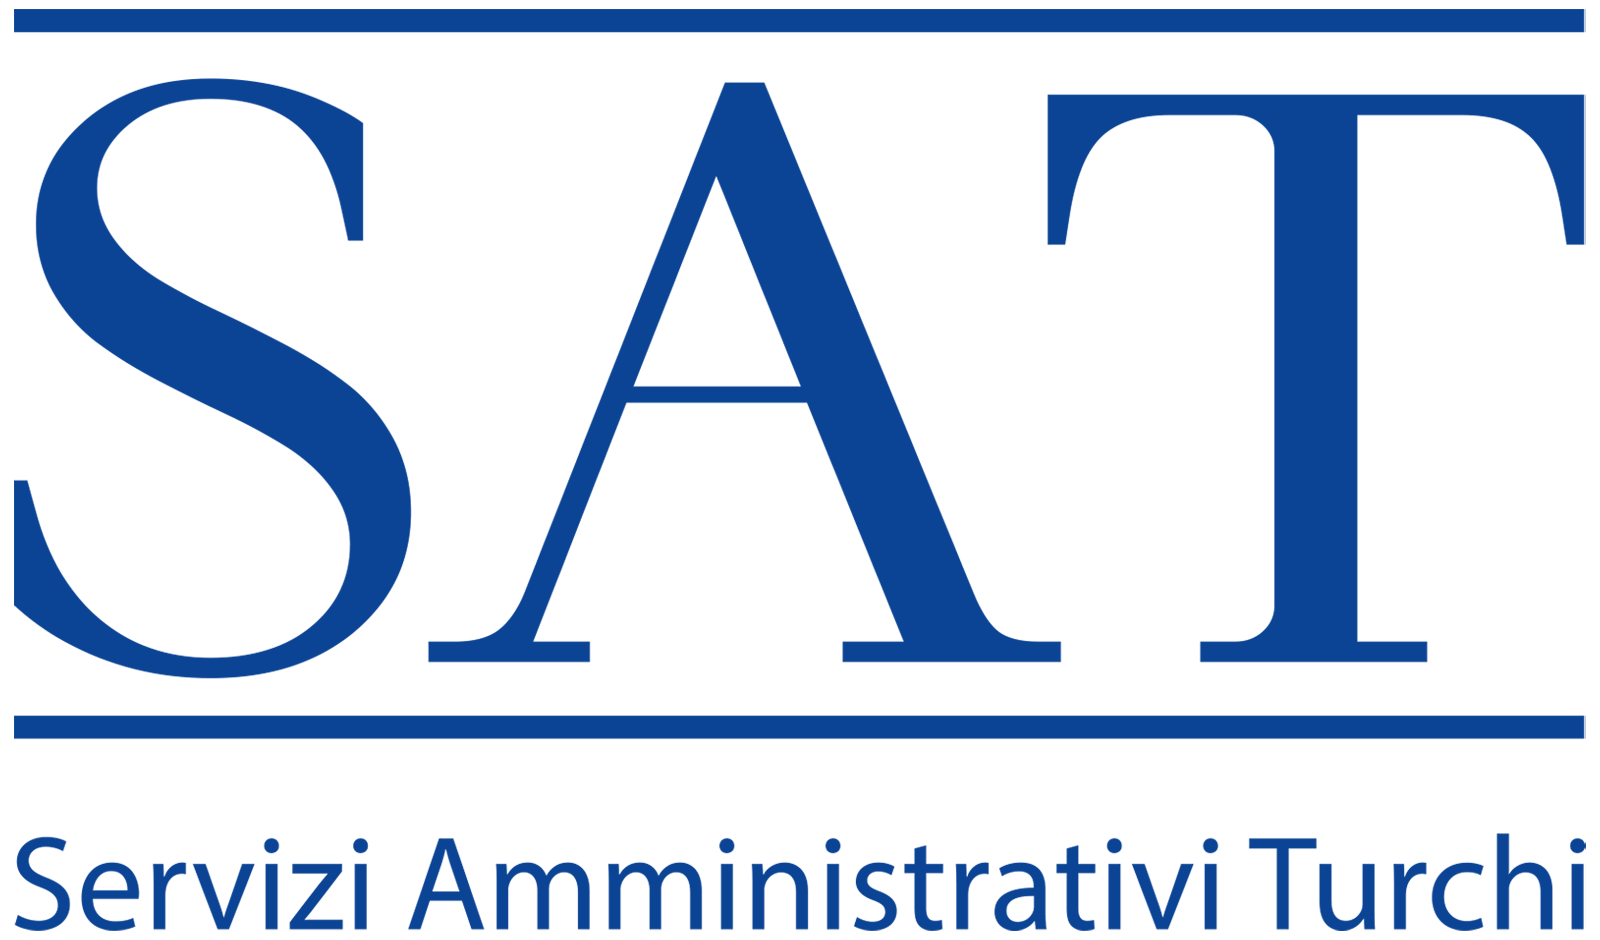 SAT servizi amministrativi turchi